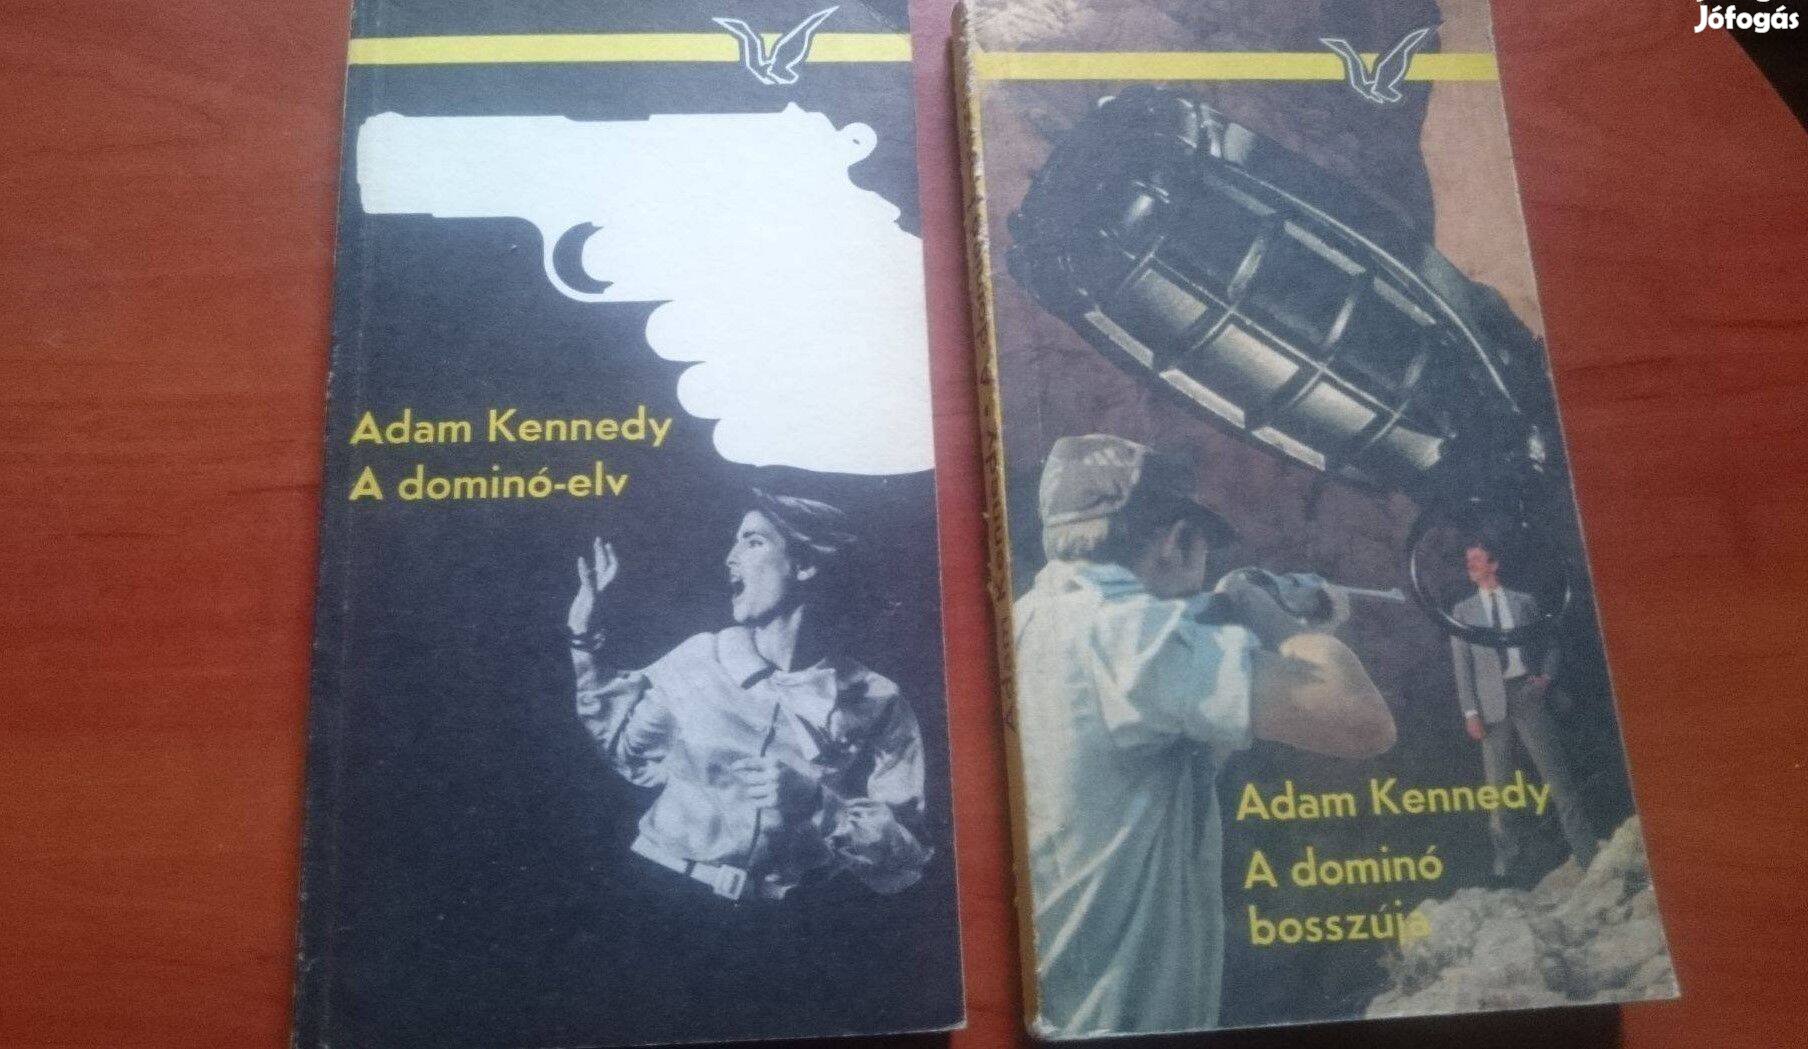 Adam Kennedy: A dominó-elv + A dominó bosszúja + a film-DVD